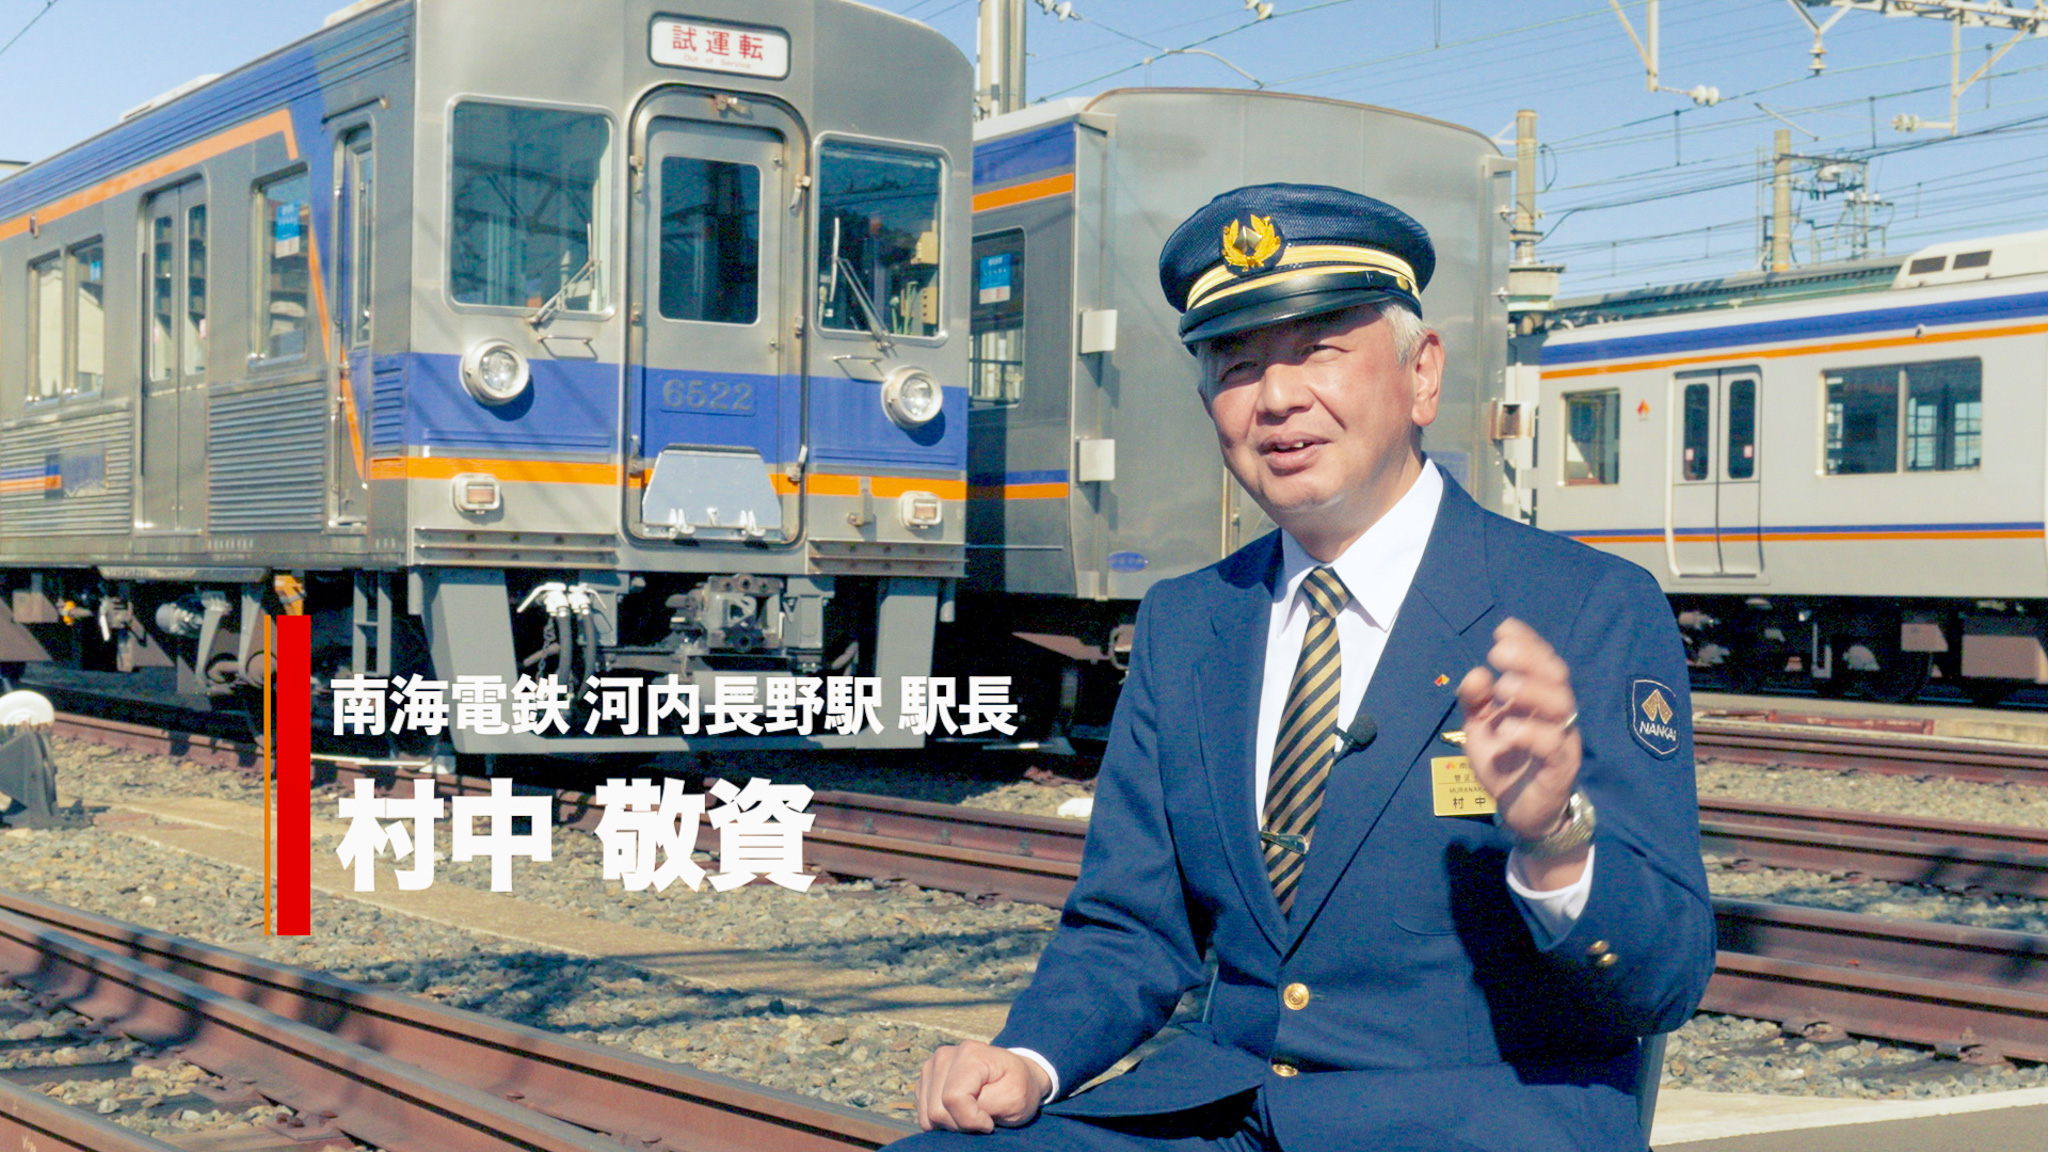 南海電鉄河内長野駅 駅長にインタビュー! 河内長野の魅力を語って頂きました。